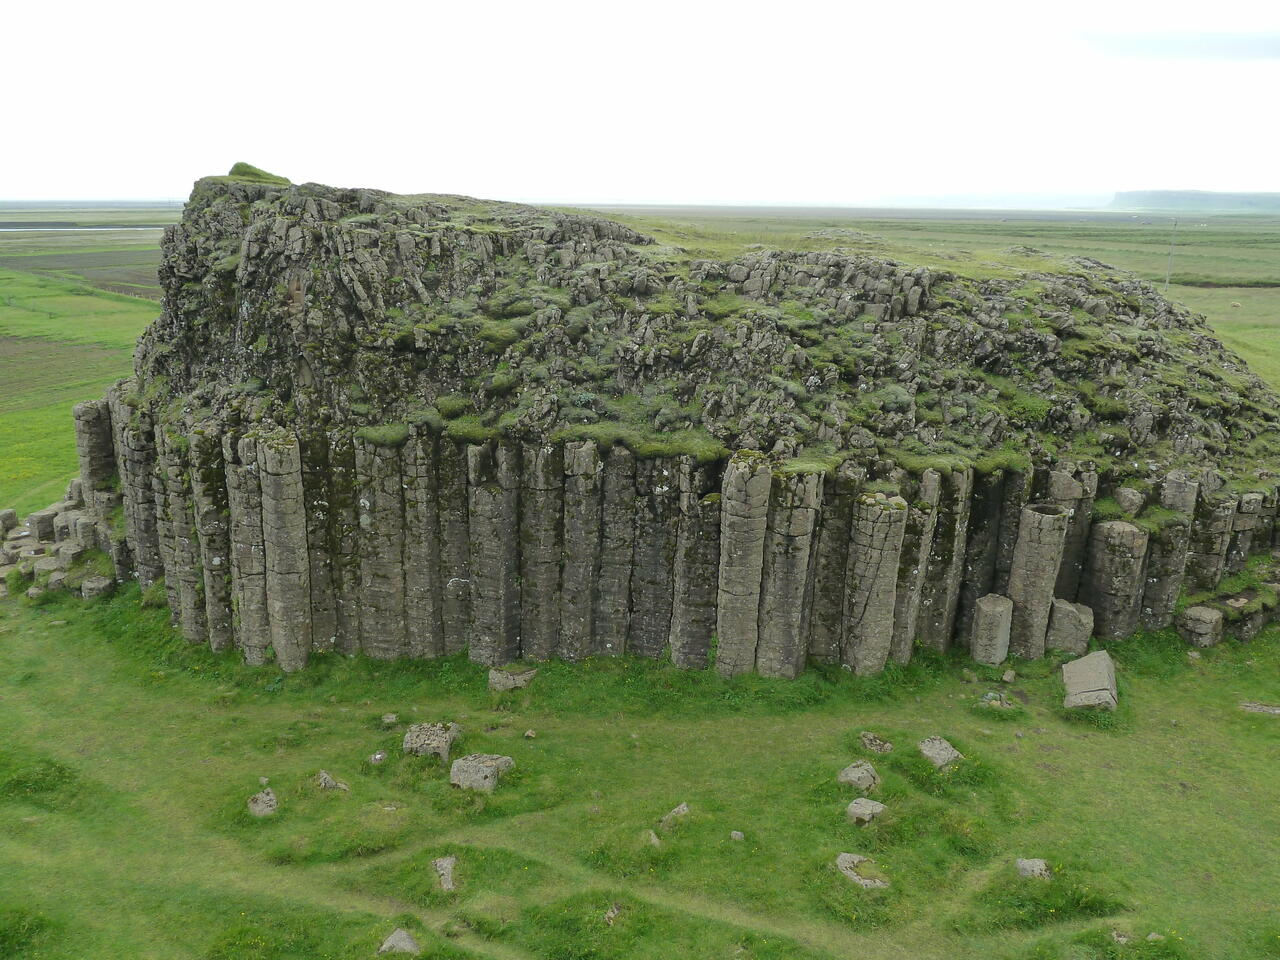 Dverghamrar auf Island: Ein etwa 50 Meter breiter, 10 Meter hoher Block aus Basalt mit einer Schicht aus Säulen, darüber eine chaotisch wirkende Gesteinsschicht; (c) Stephan Matthiesen 2011